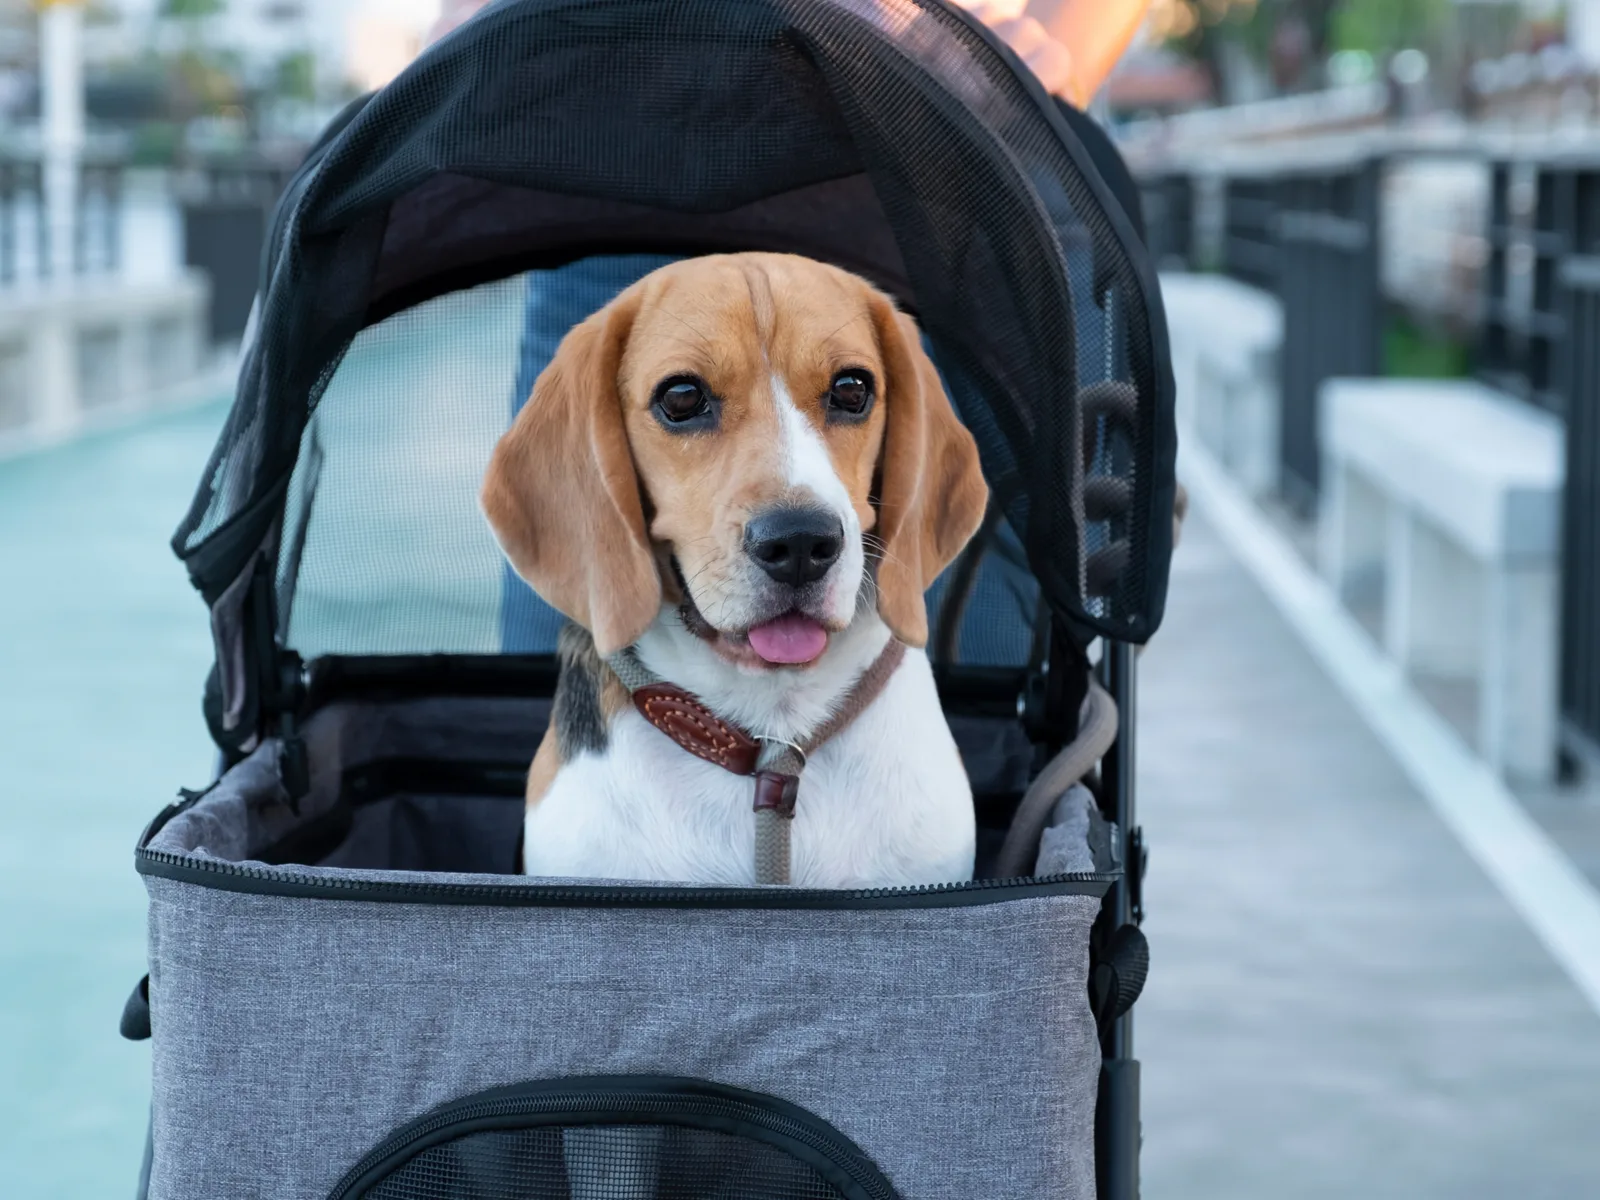 Pet sitting in the best dog stroller looking ahead on a boardwalk